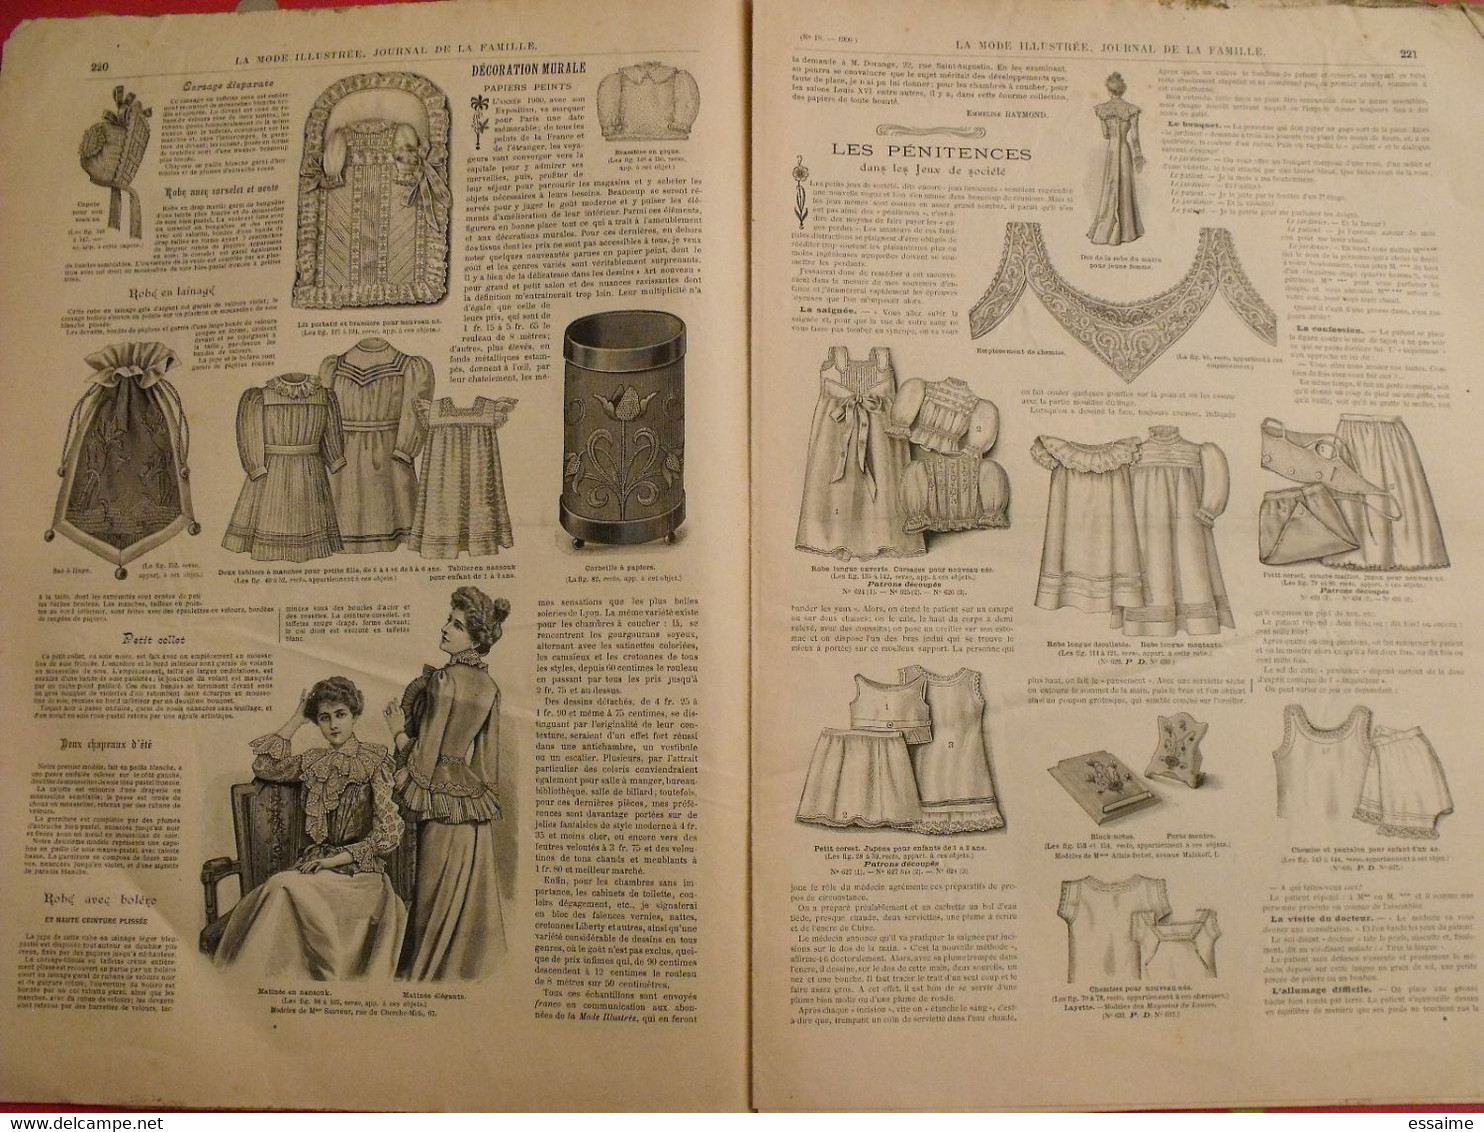 4 Revues La Mode Illustrée, Journal De La Famille.  N° 15,16,17,18 De 1900. Couverture En Couleur. Jolies Gravures - Mode